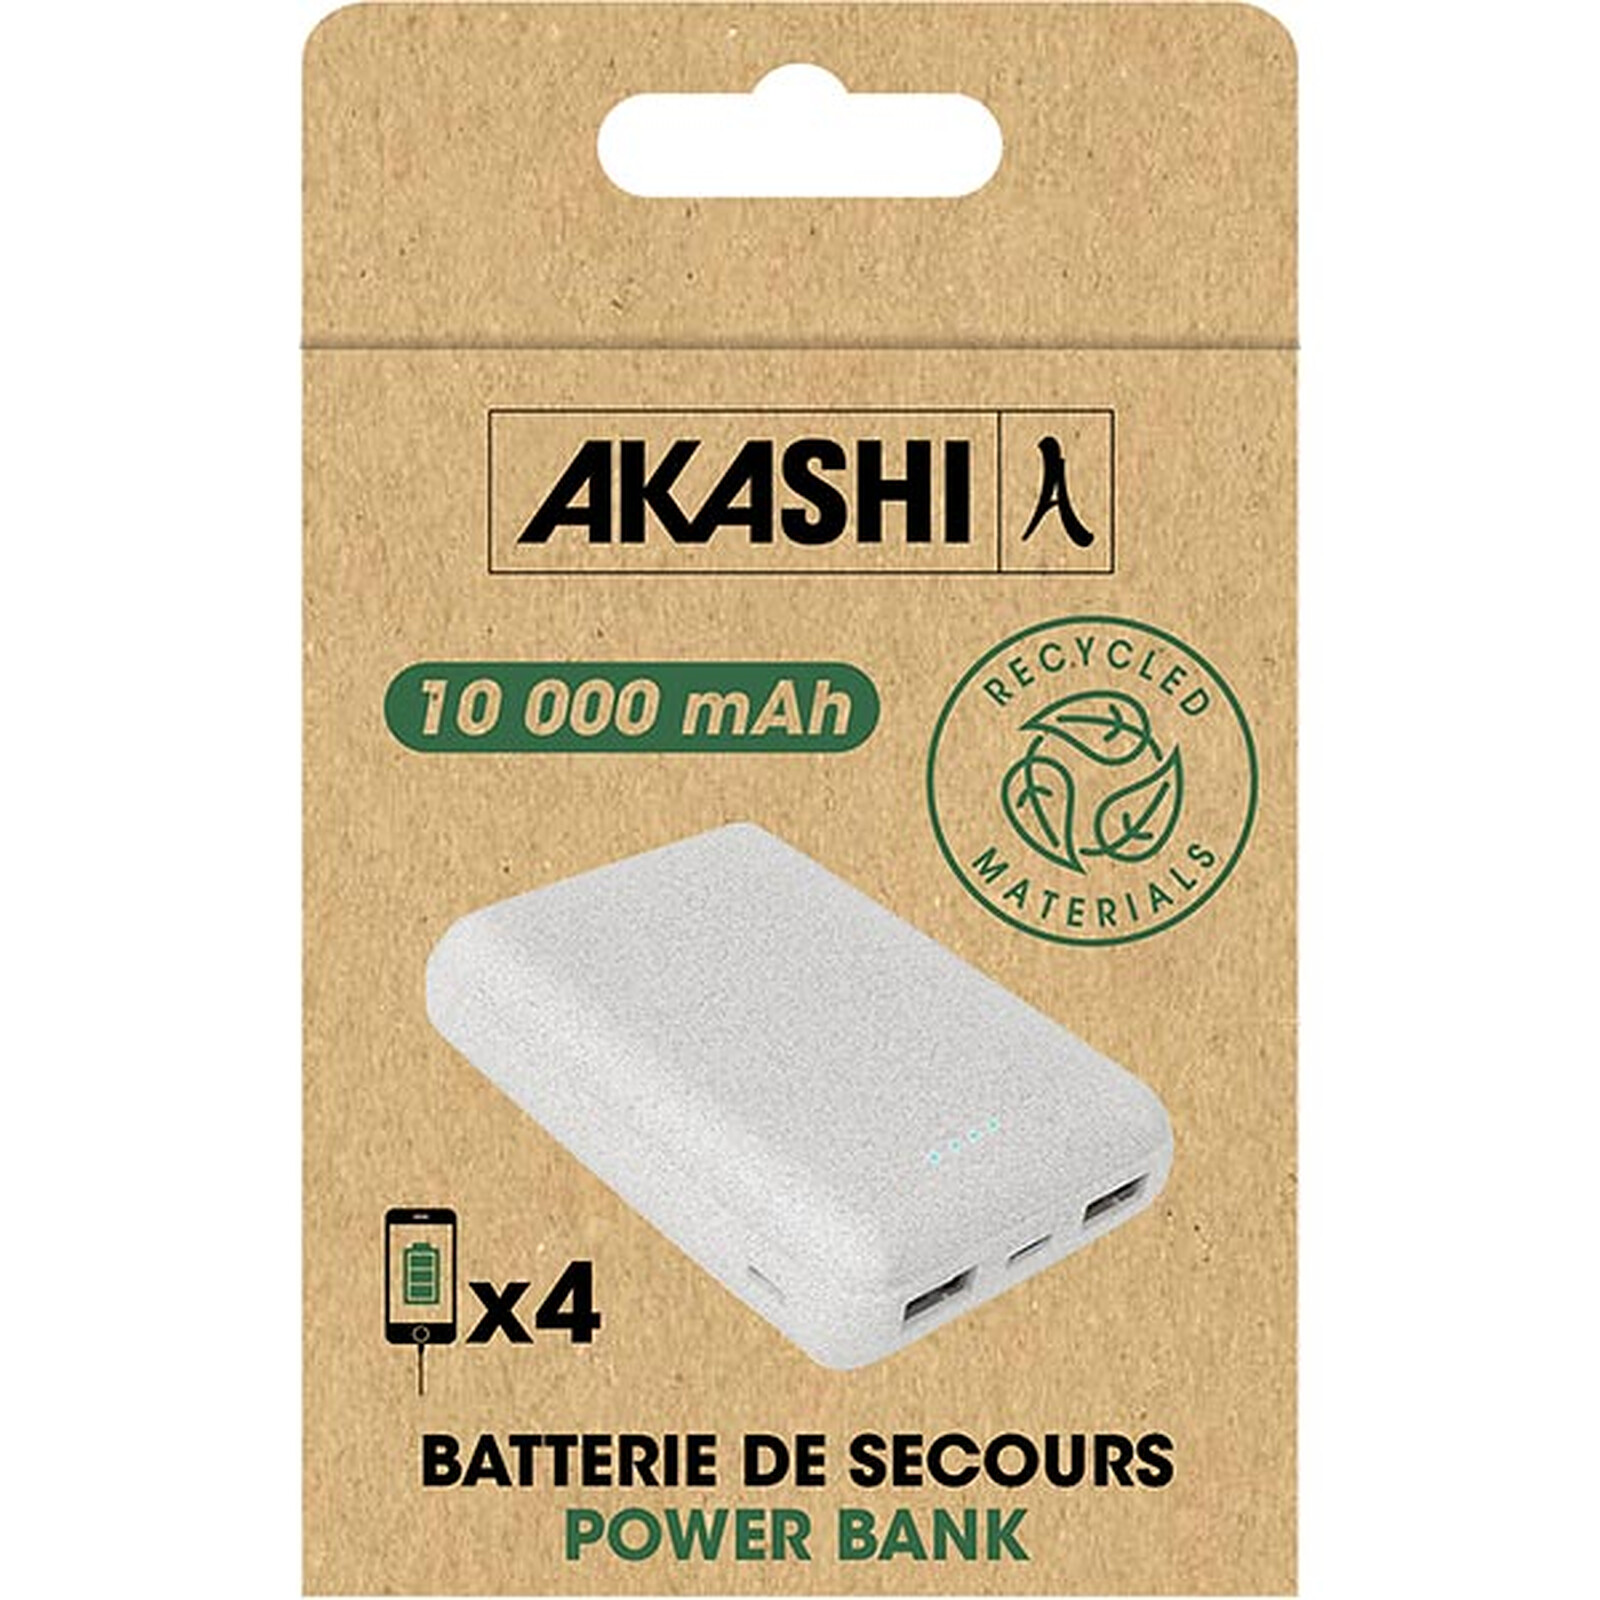 Batería de reserva Akashi 10000 mAh Eco (Blanca)